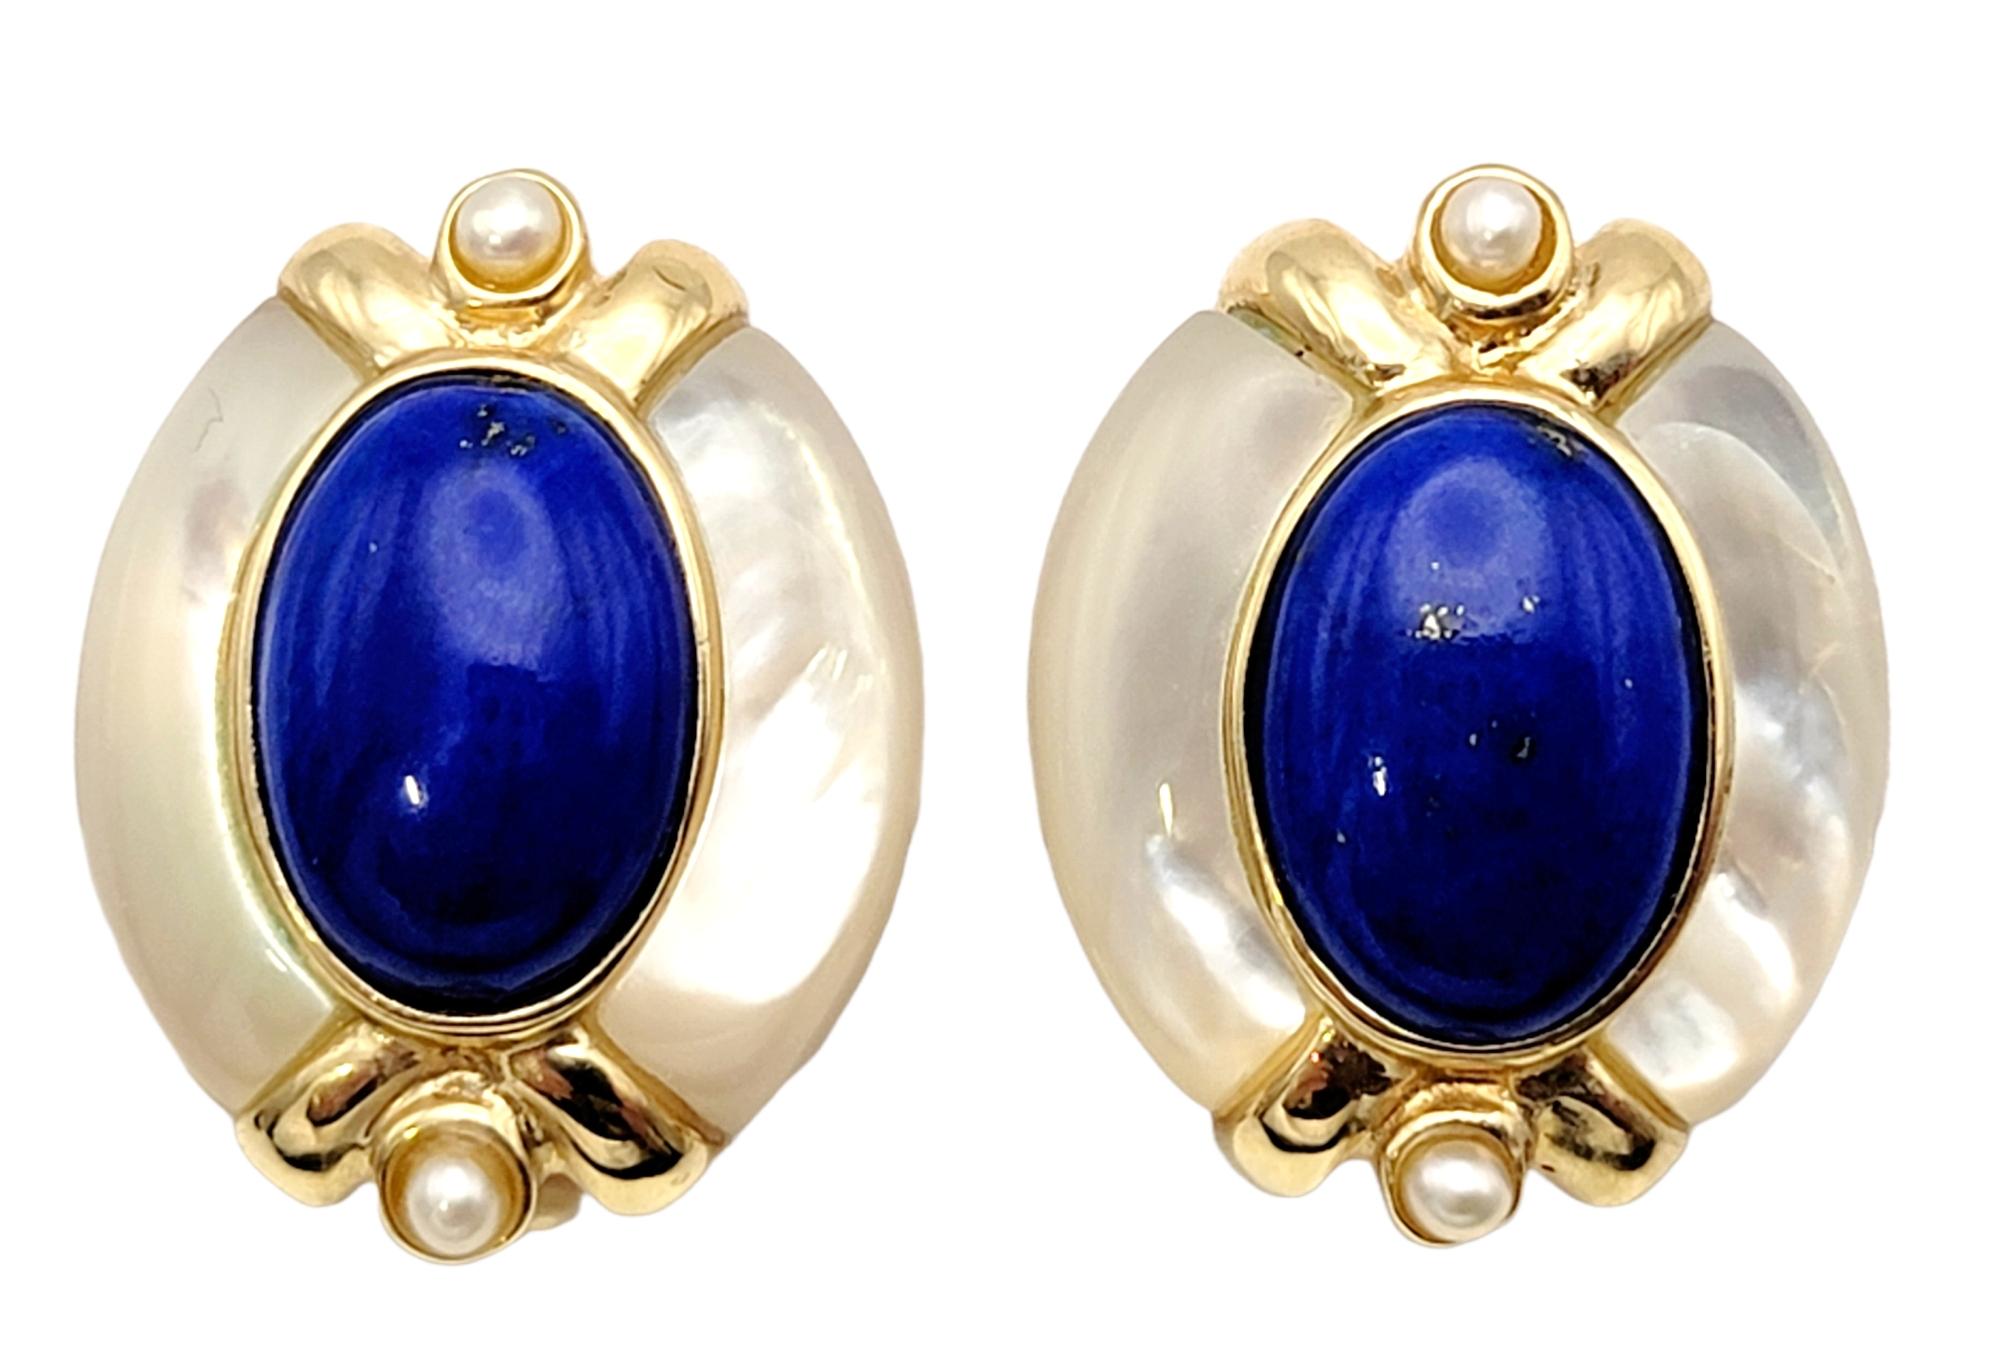 Helle und schöne Ohrringe mit Lapis und Perlen füllen das Ohrläppchen mit farbenfroher Eleganz. Die schillernden Perlen strahlen um den leuchtend blauen Lapis herum, während das warme Gelbgold einen herrlichen Kontrast bietet.  

Metall: 14K